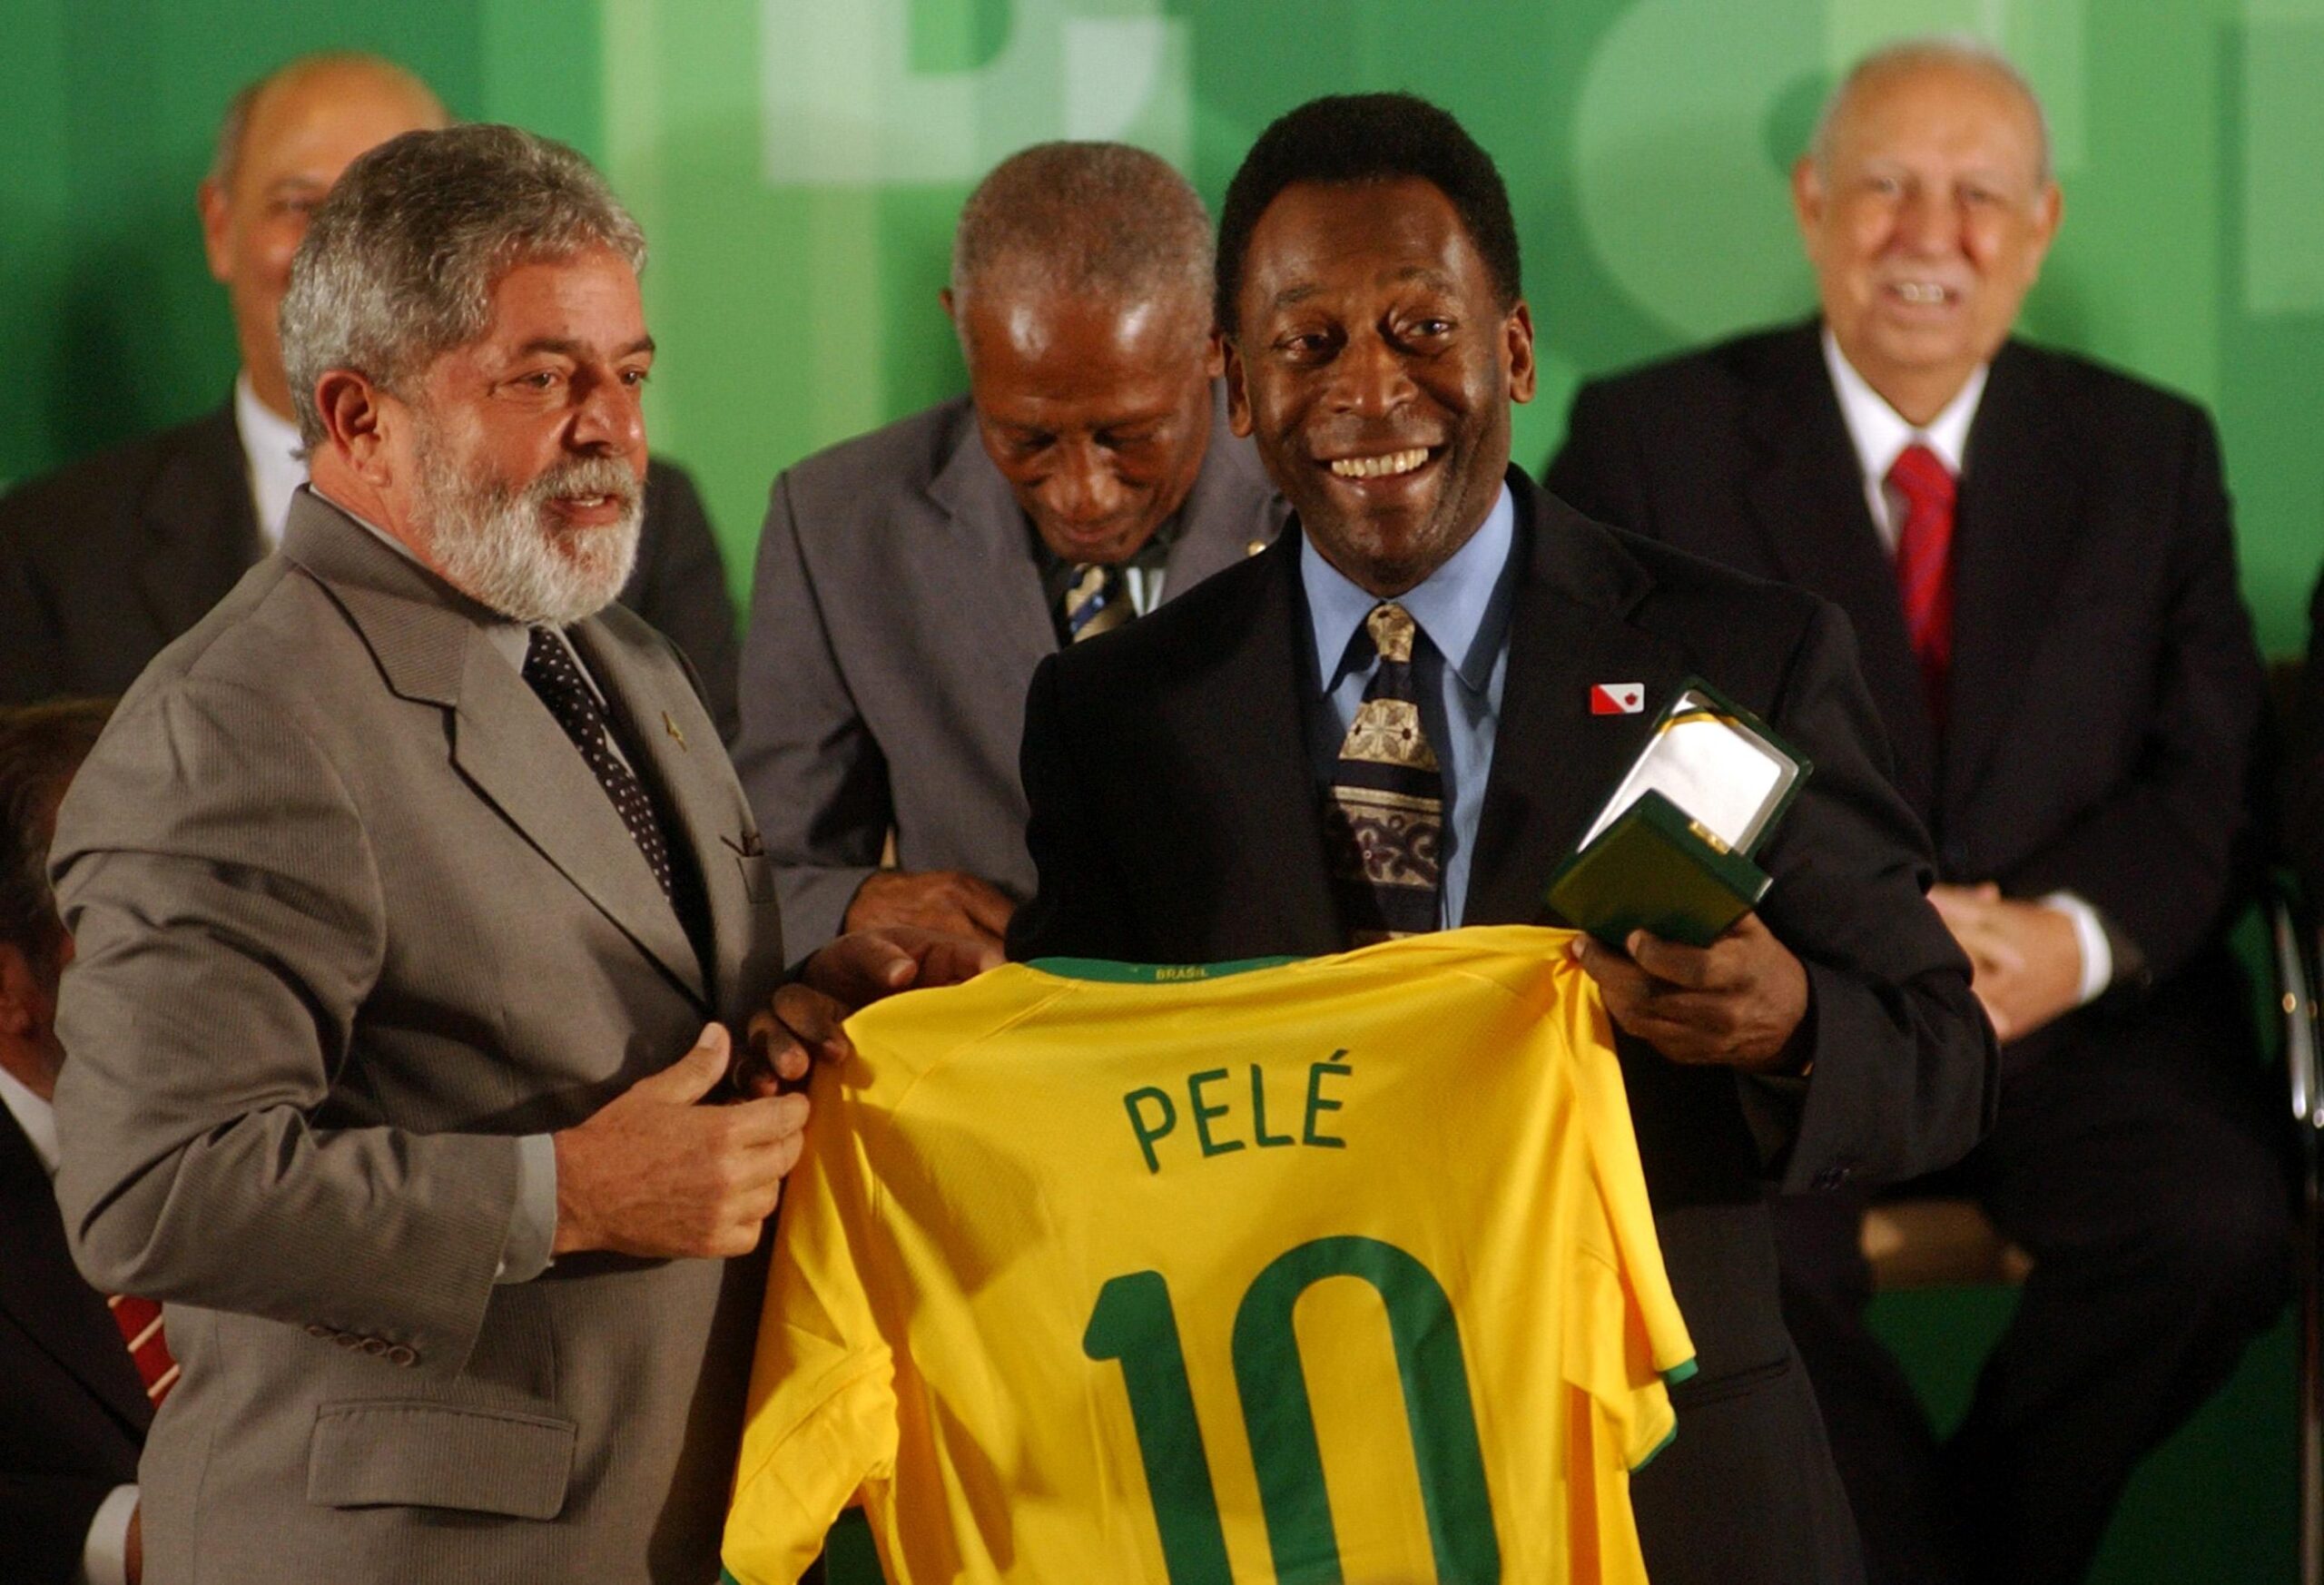 Pelé e Lula in una foto dove tengono la maglia di calcio del giocatore